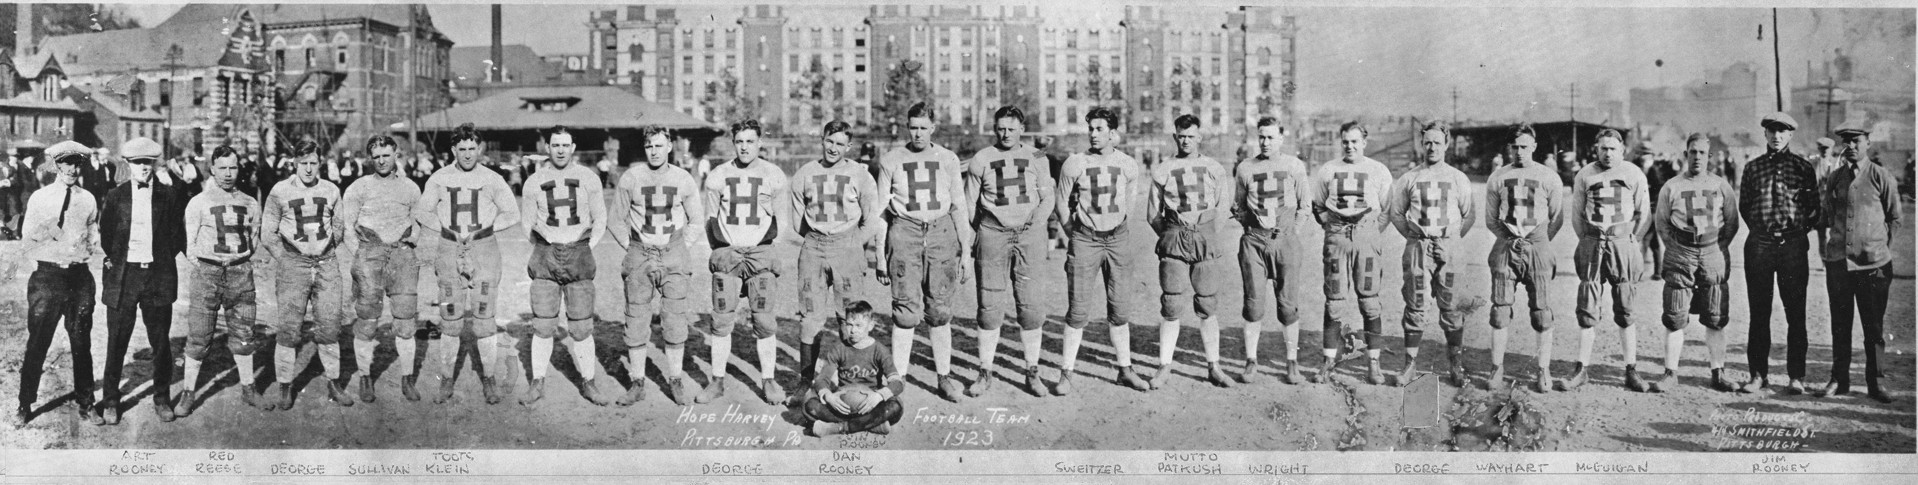 Hope Harvey Football Team, 1923 by Ray Sokolowski